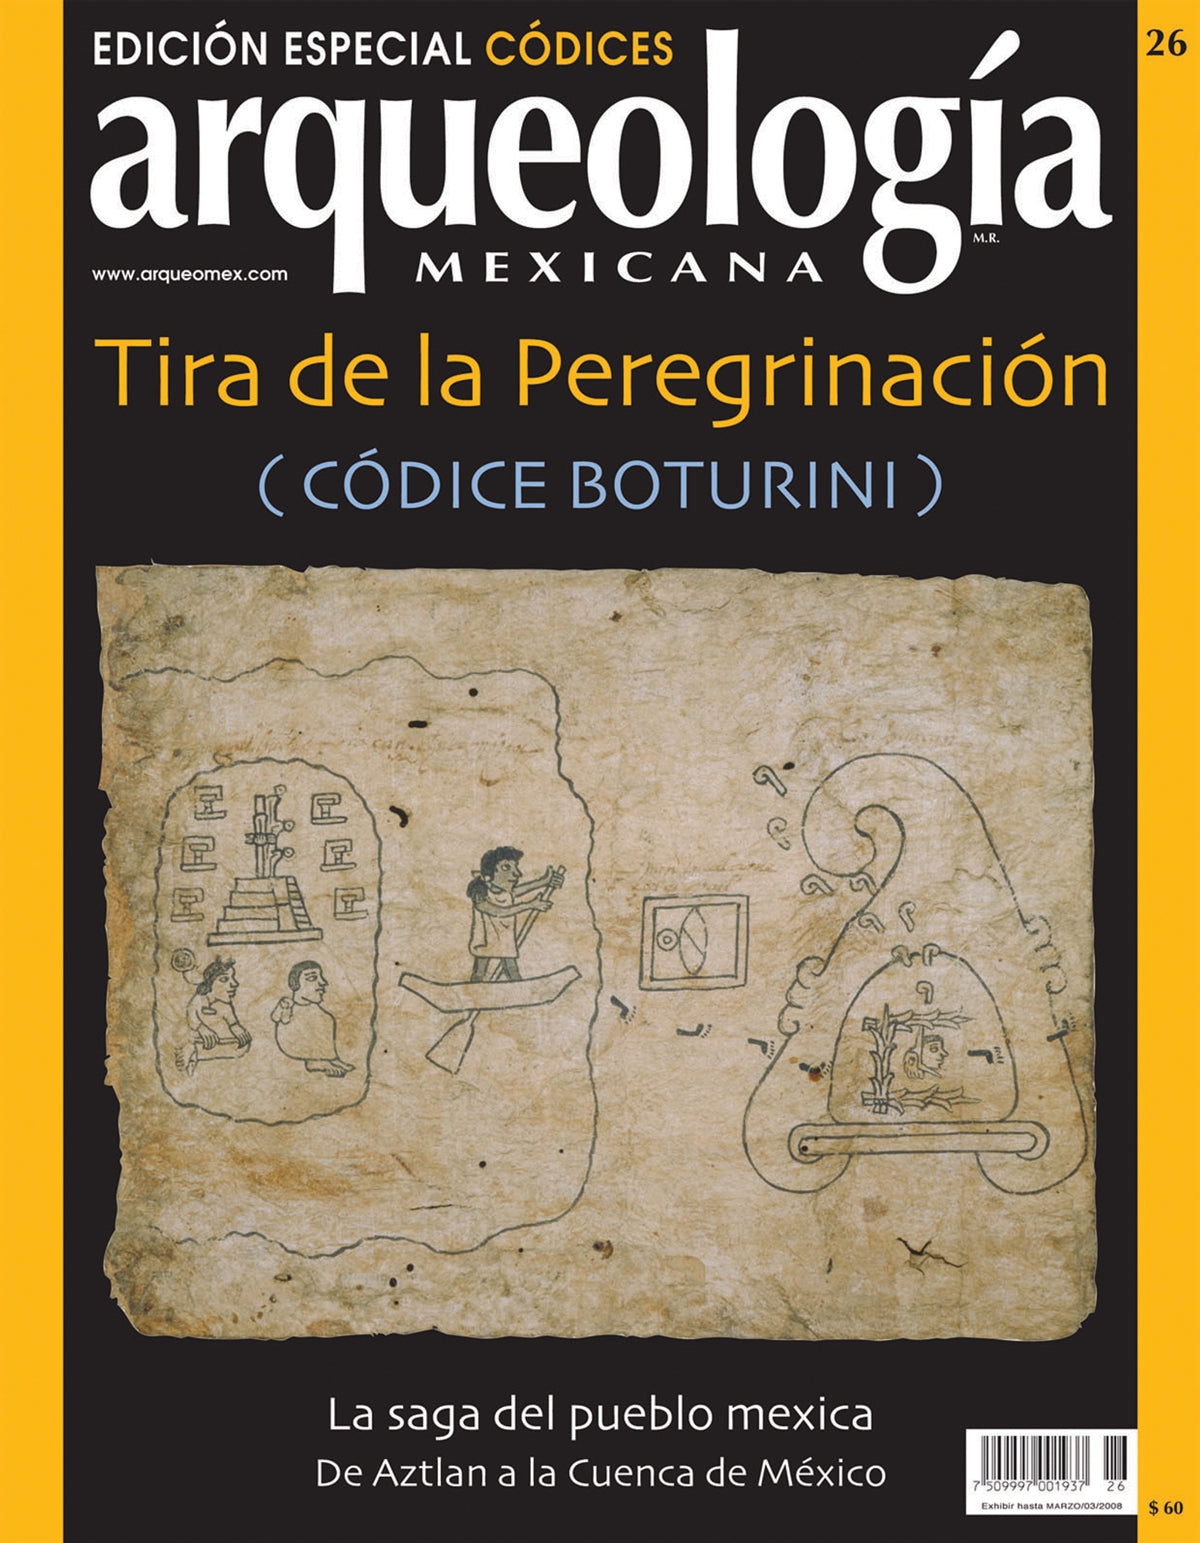 Tira de la Peregrinación (Códice Coturini)